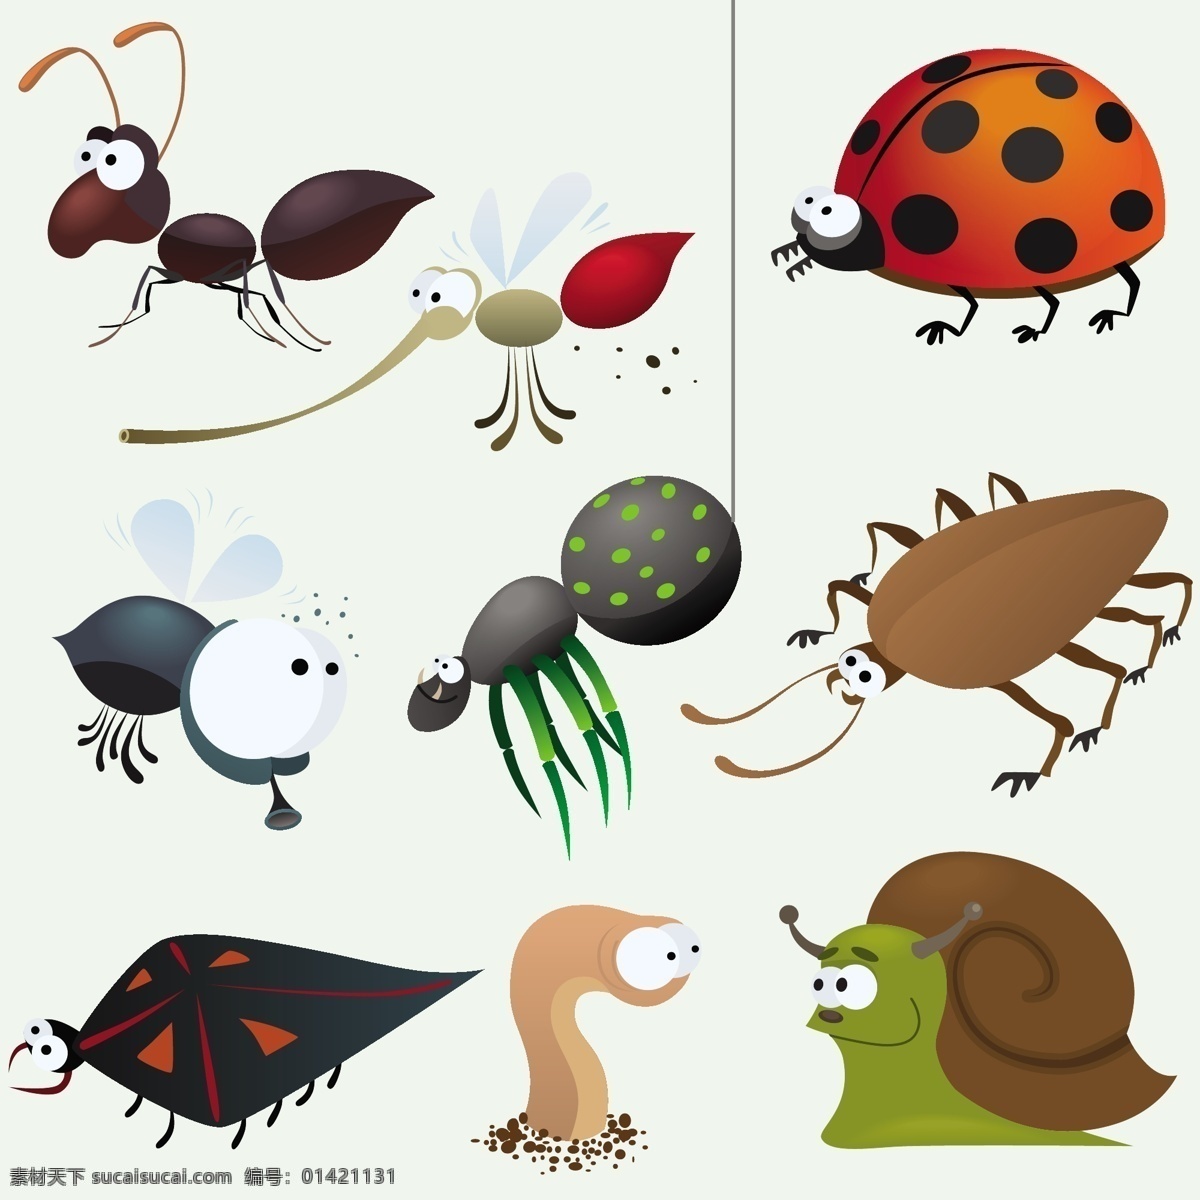 卡通 昆虫 矢量 材料 动物 可爱 蚂蚁 瓢虫 矢量素材 蚊子 蜗牛 蚯蚓 蜘蛛 矢量图 矢量人物